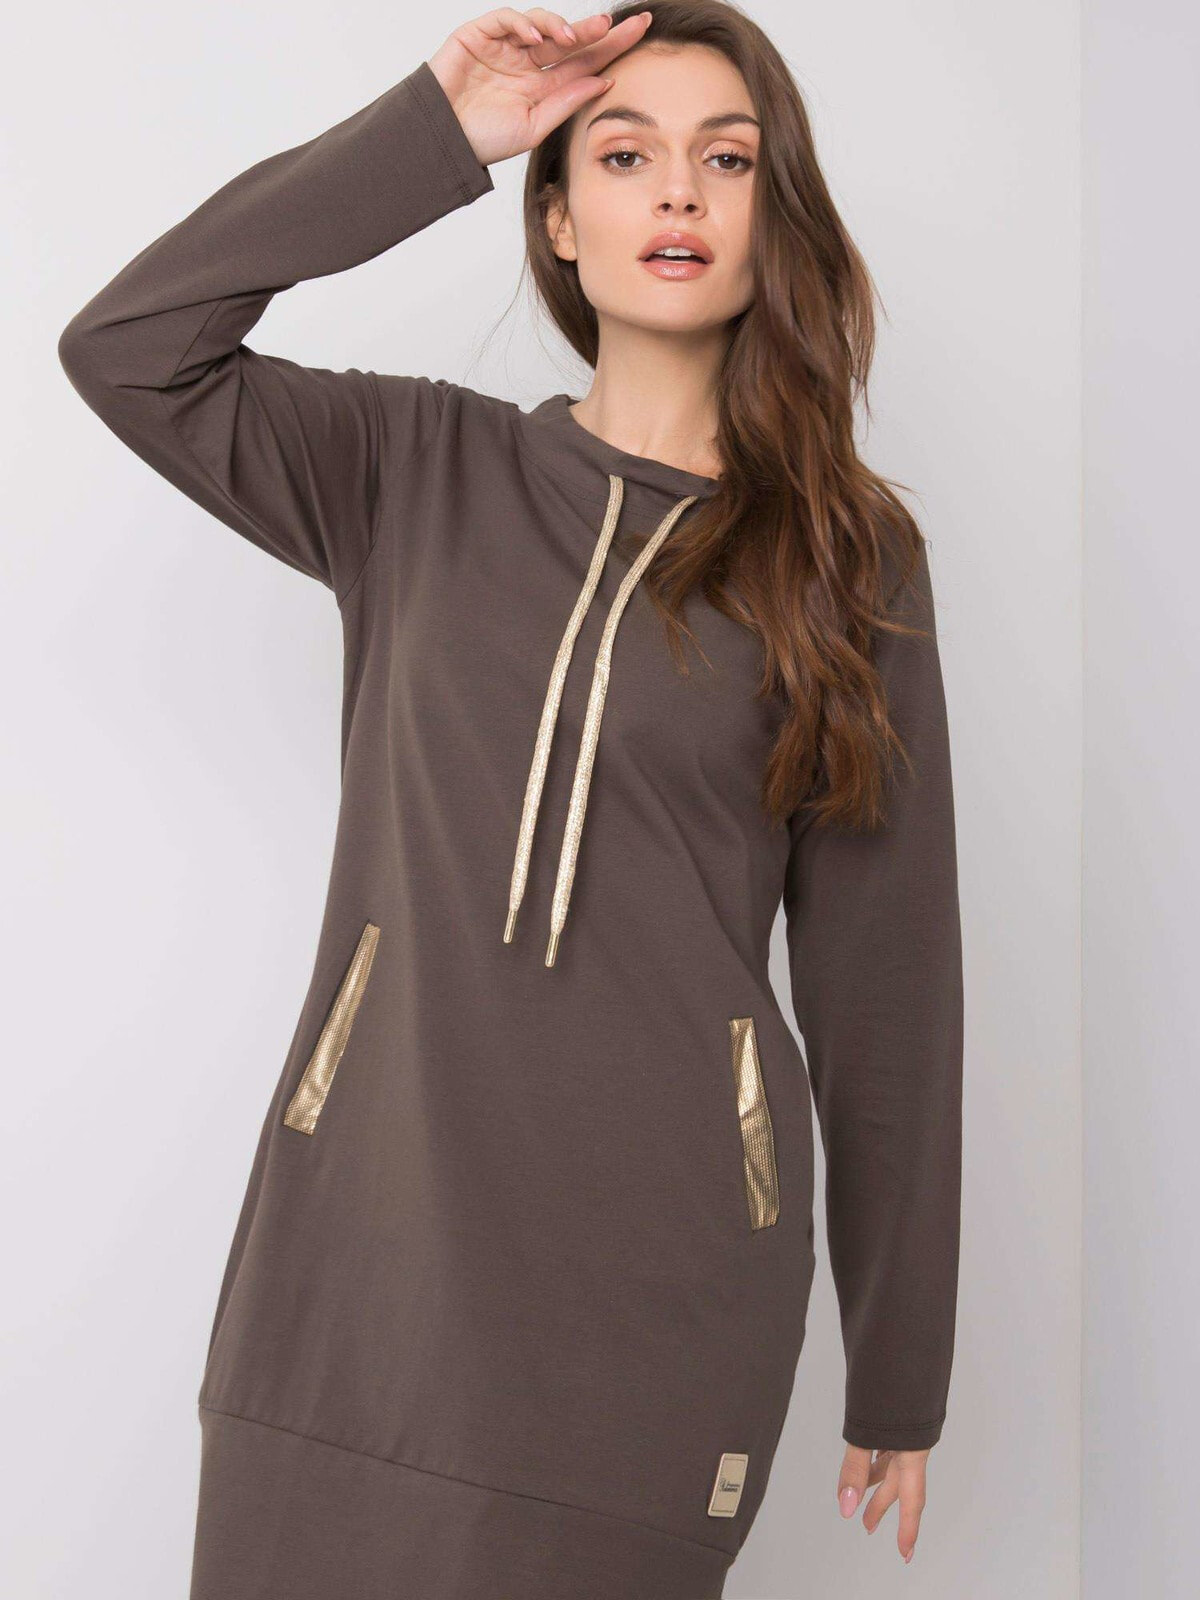 Женское платье худи с капюшоном и карманами по бокам коричневое Factory Price